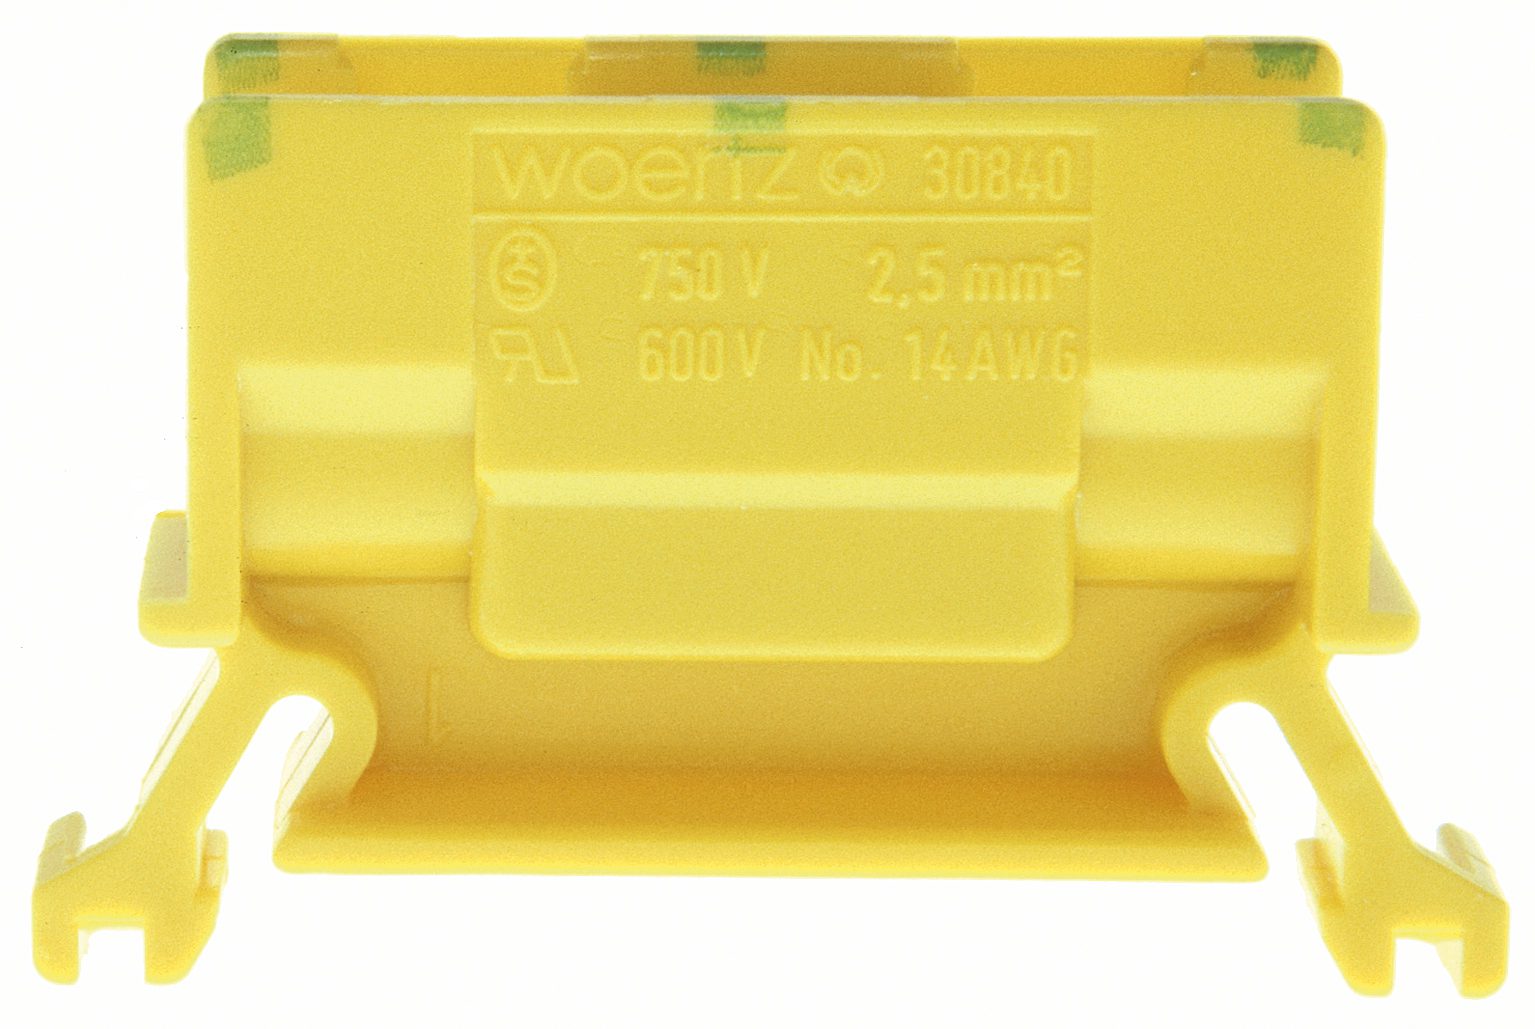 Aftakklem DIN35 2,5mm2 groen-geel